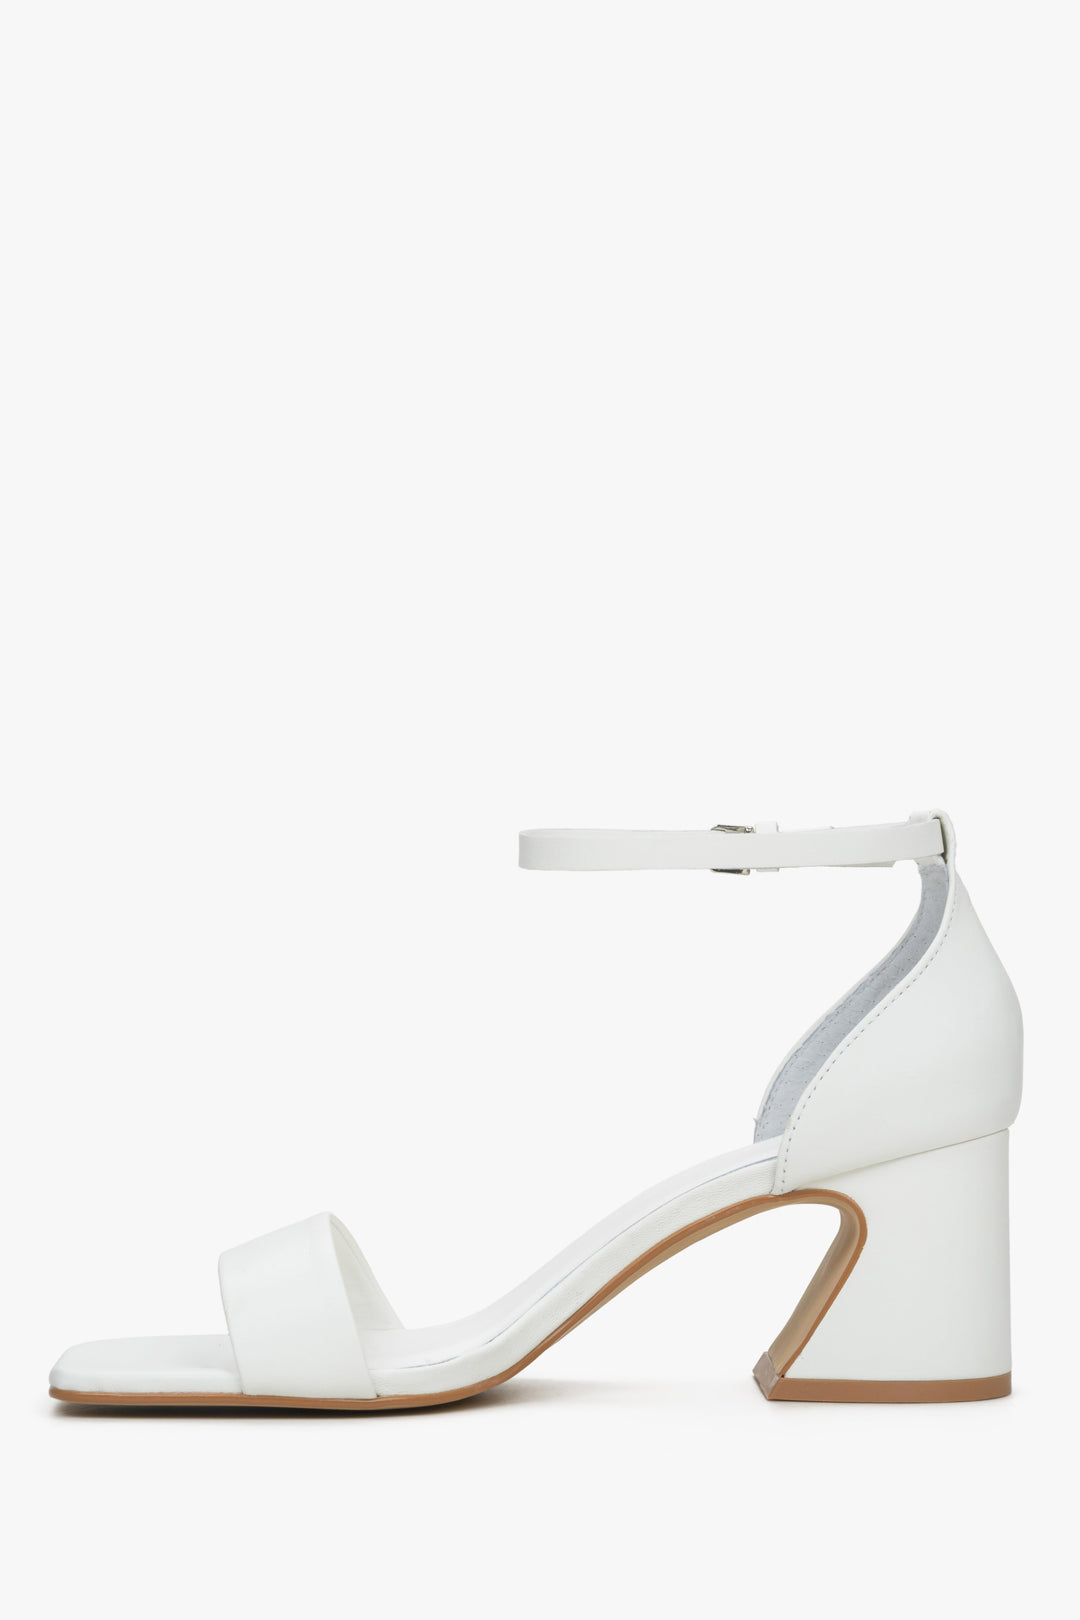 Damskie białe sandały na obcasie Estro - profil buta.